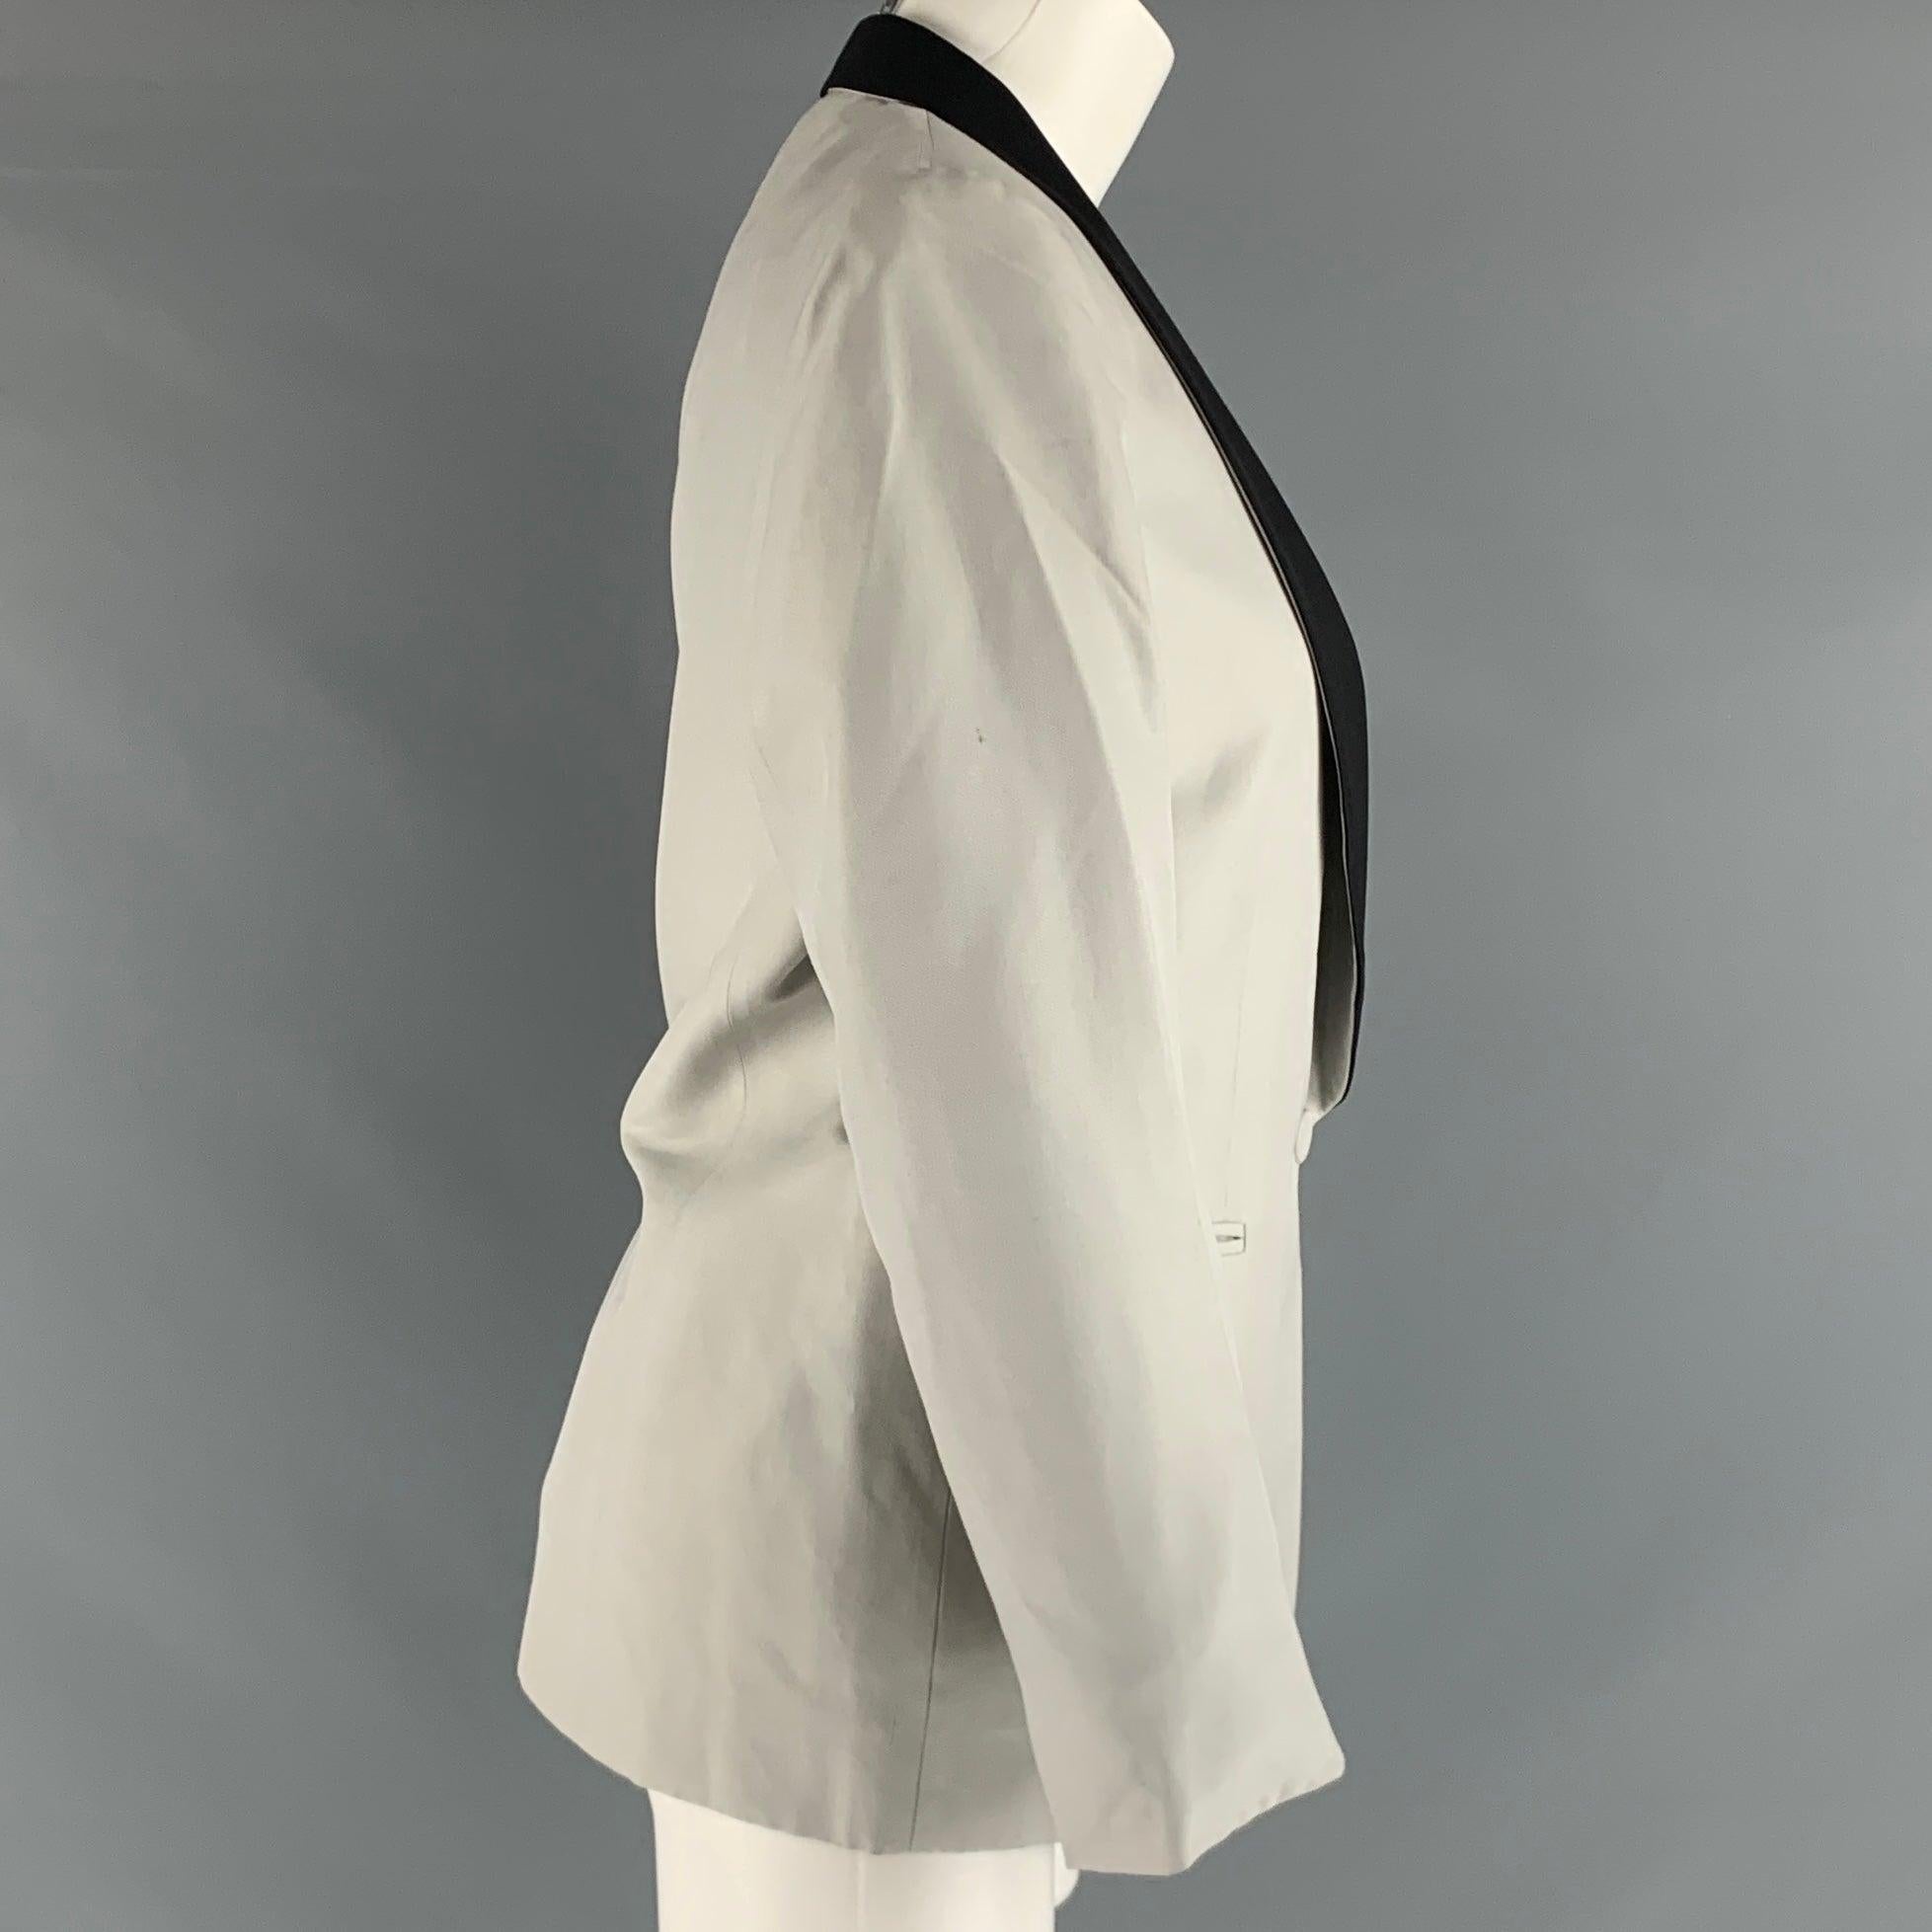 Ce blazer STELLA McCARTNEY en soie tissée argentée présente un revers châle noir, des poches passepoilées et une fermeture à bouton unique. Fabriqué en Italie. Très bon état. Taches mineures, voir la photo. 

Marqué :   44 

Mesures : 
 
Épaule :